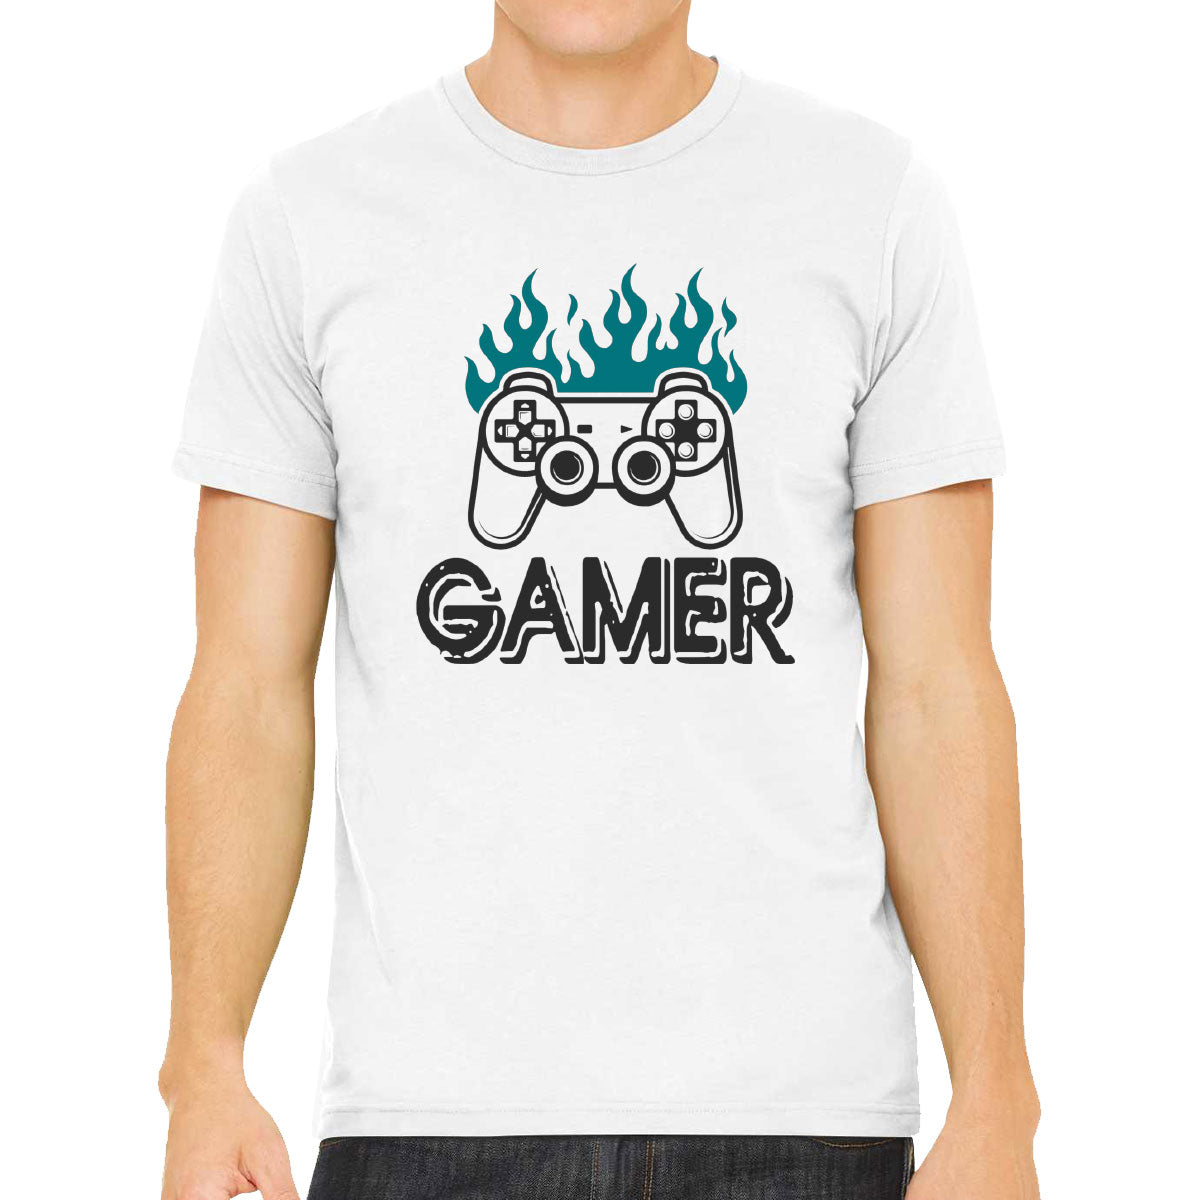 Gamer Men's T-shirt